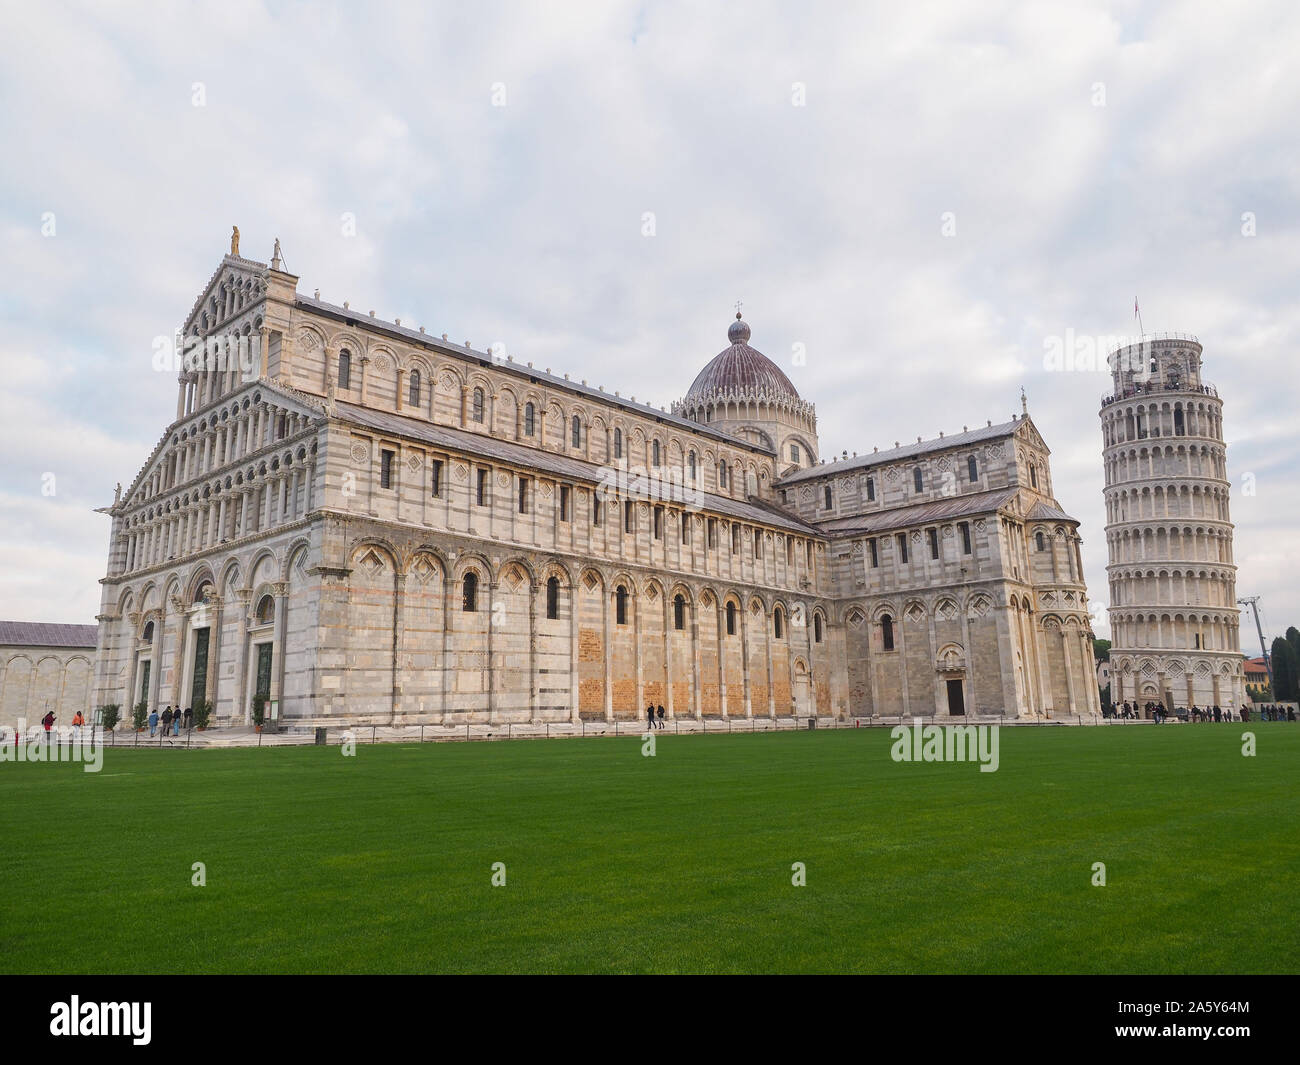 Centro histórico de Pisa. Catedral o Duomo di Santa Maria Assunta y la famosa Torre Inclinada o autoestables campanile. Vista de la Piazza dei Miracoli. Foto de stock